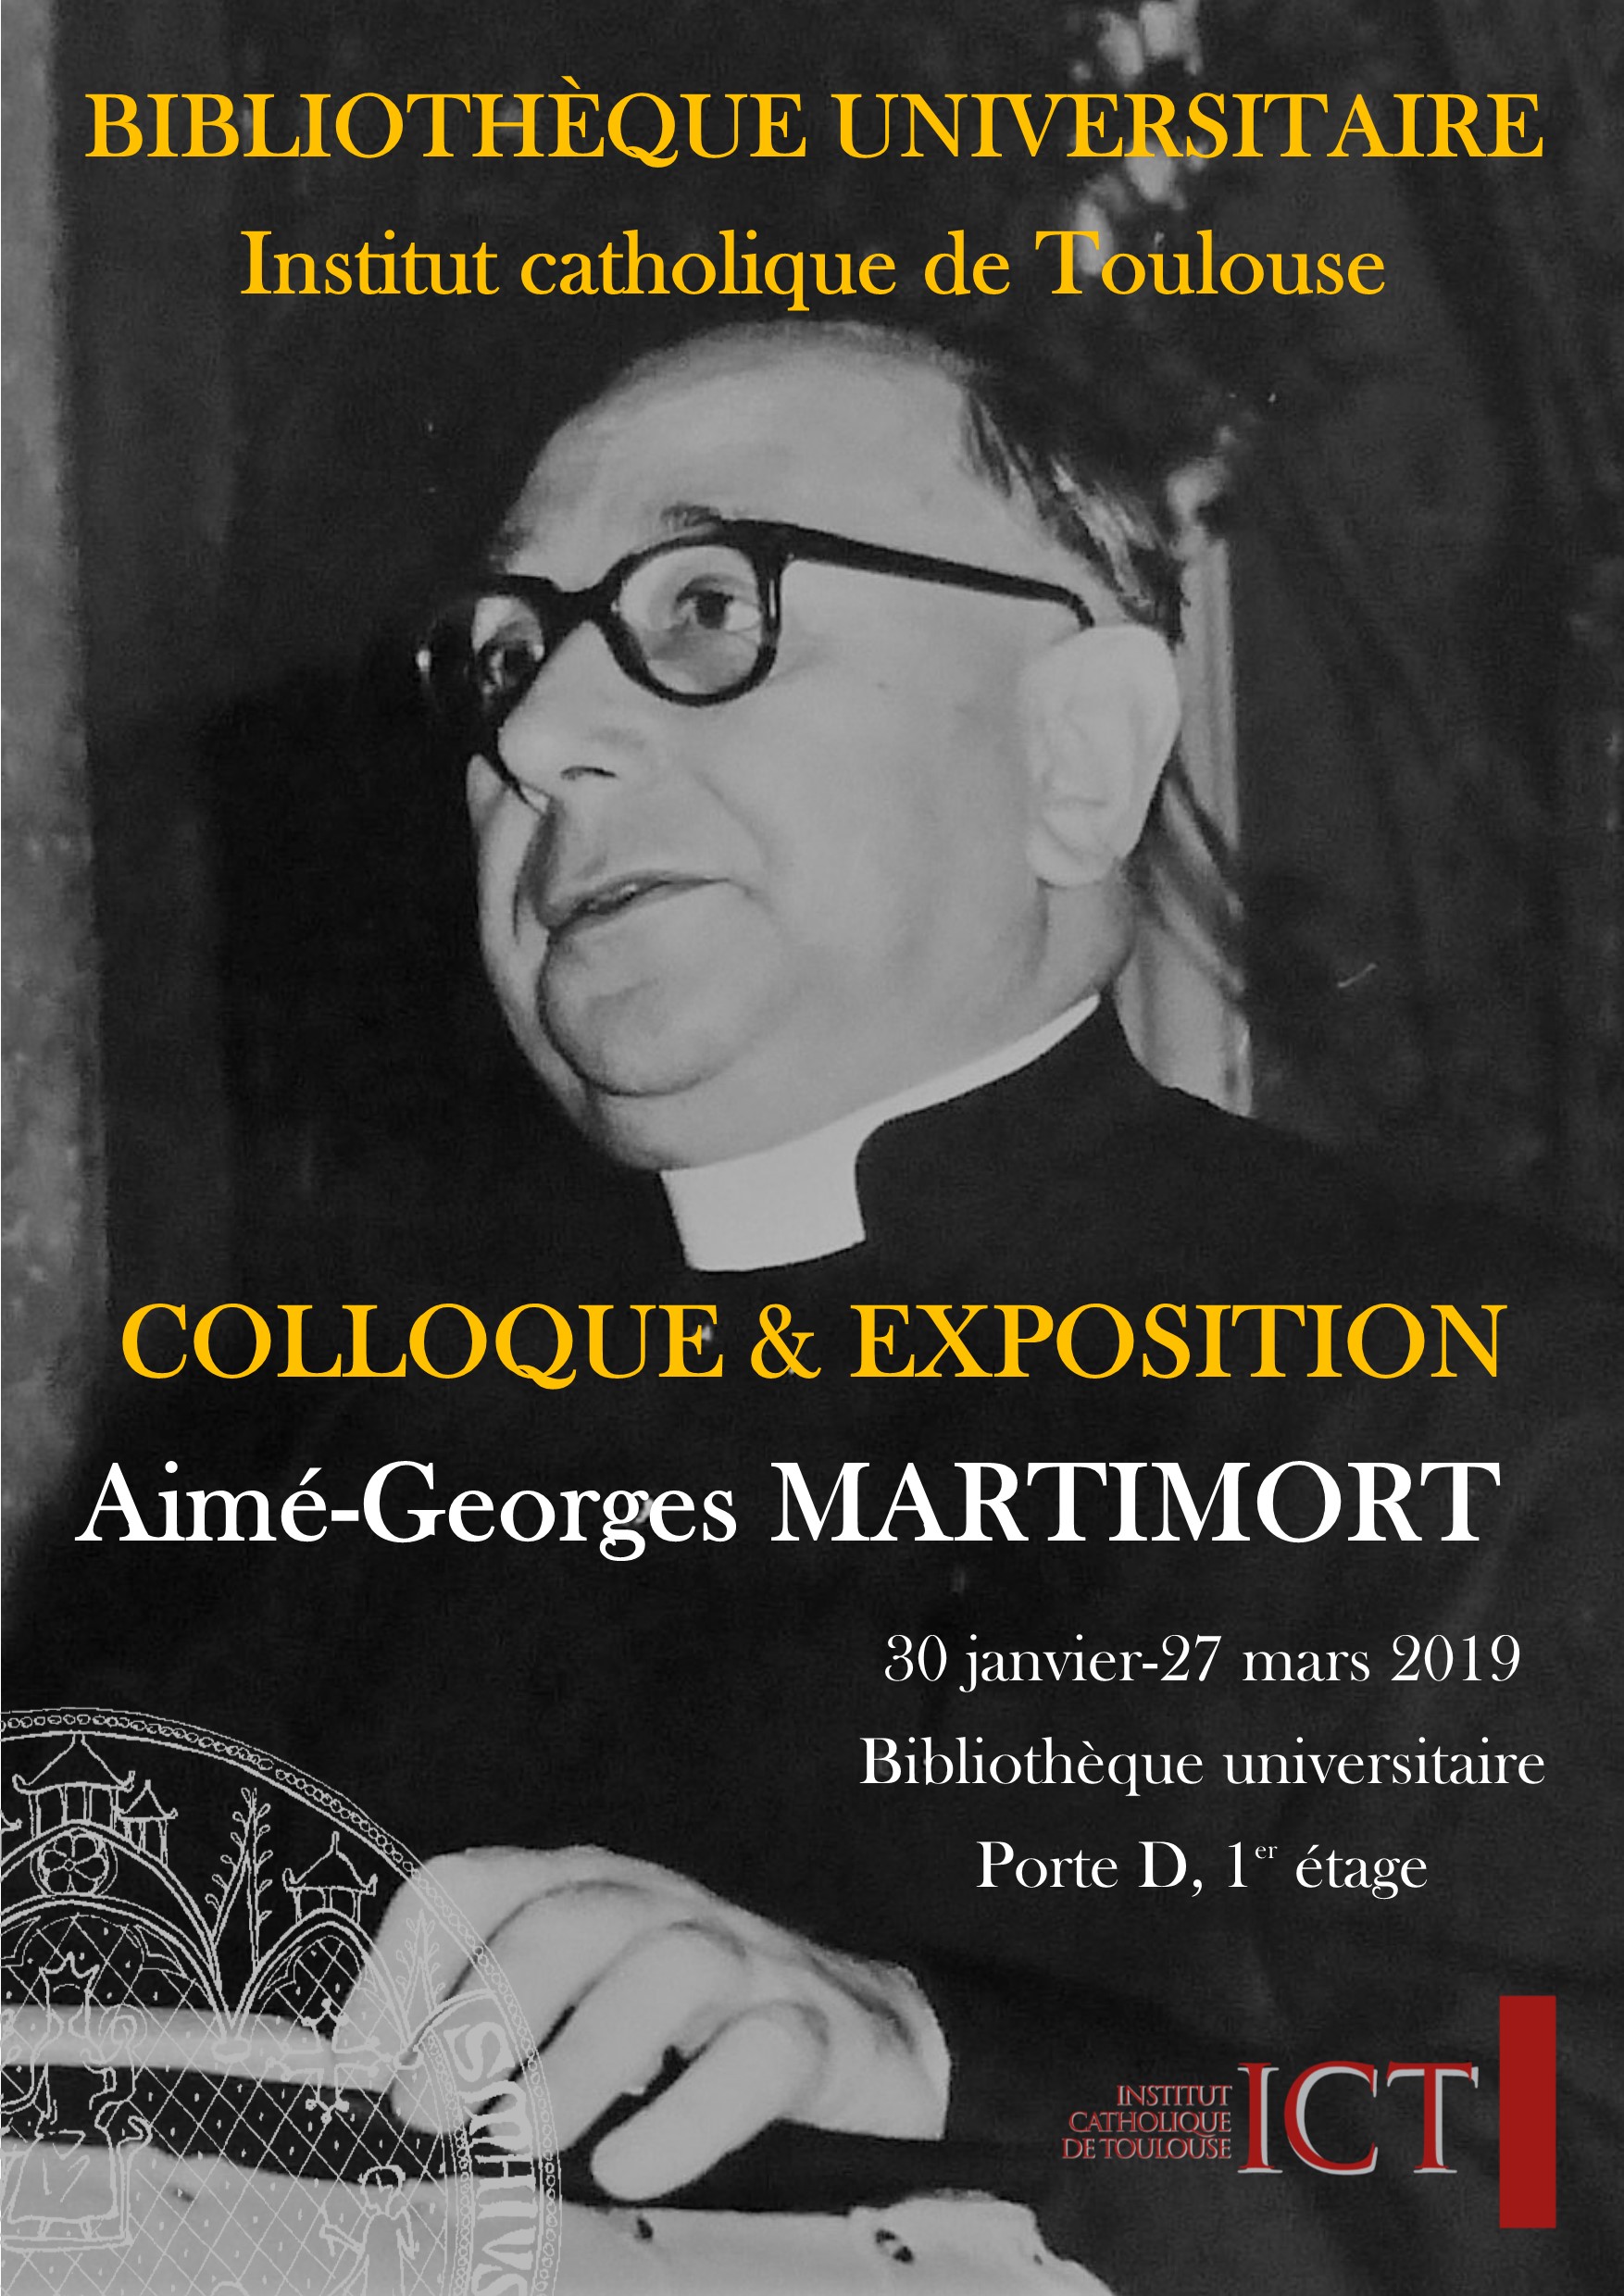 Affiche présentant le colloque et l'exposition patrimoniale autour de Mgr Martimort